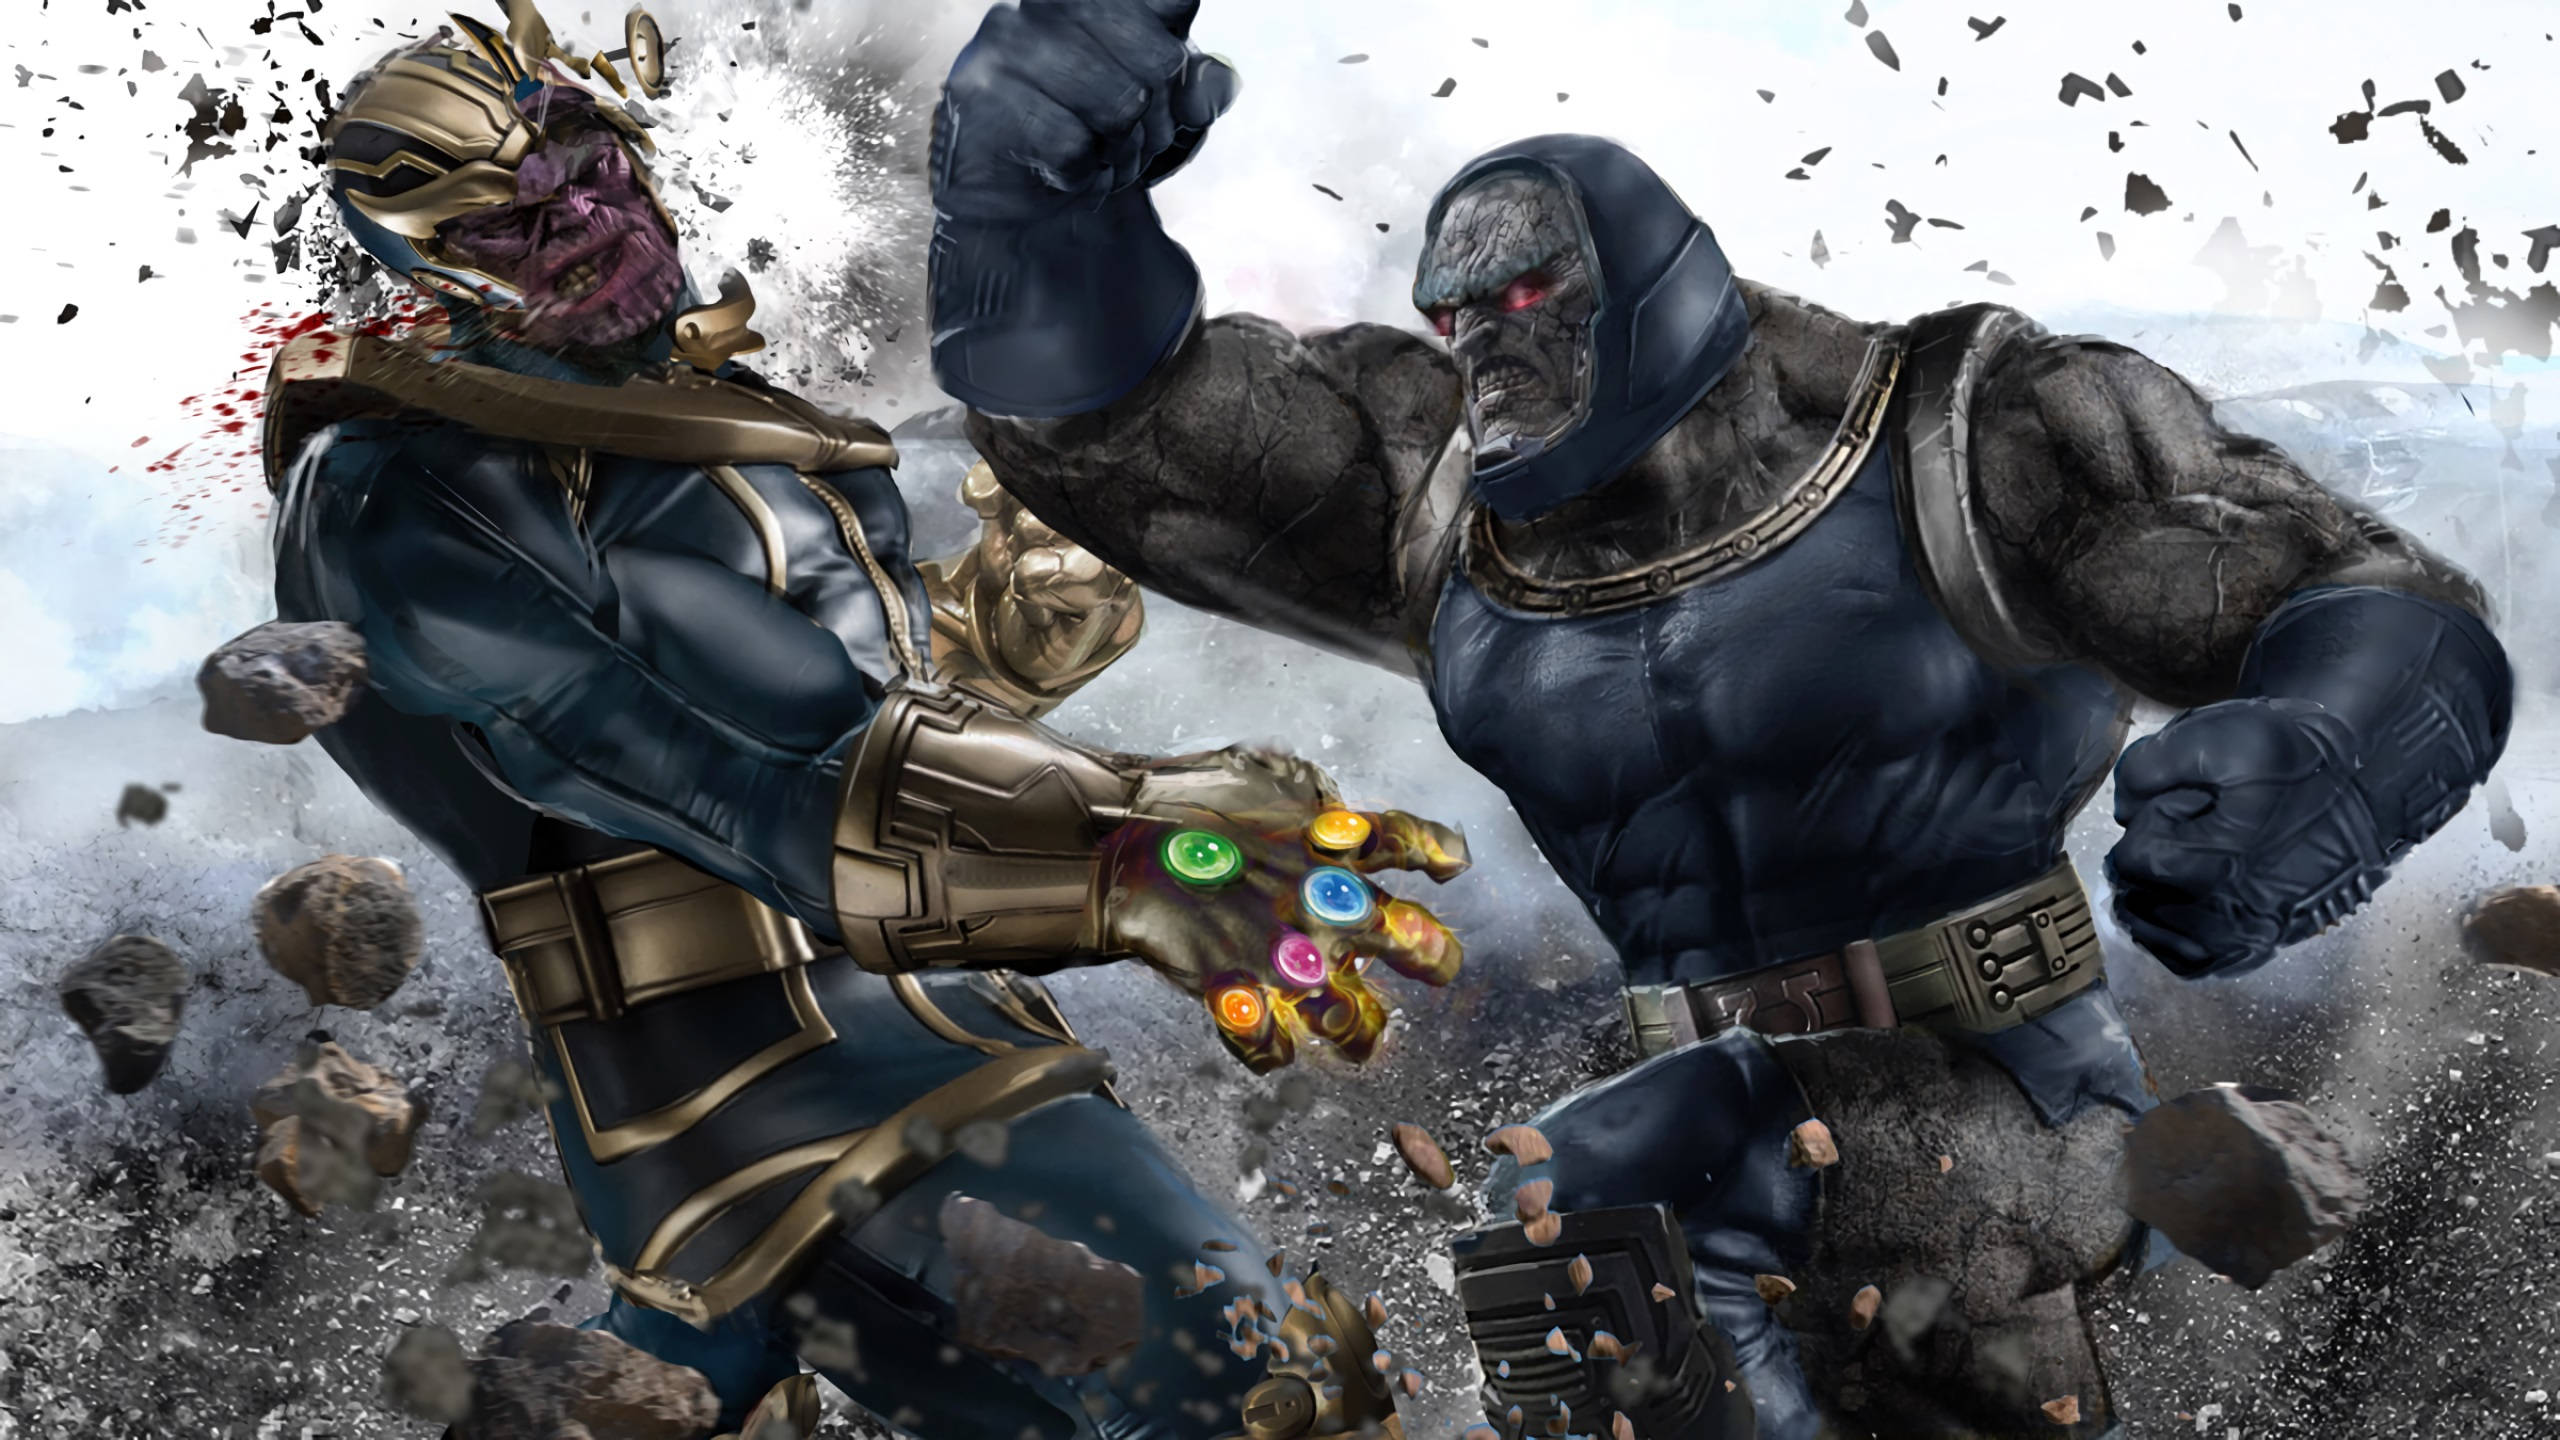 2560x1440 Marvel Thanos Vs Darkseid Wallpaper